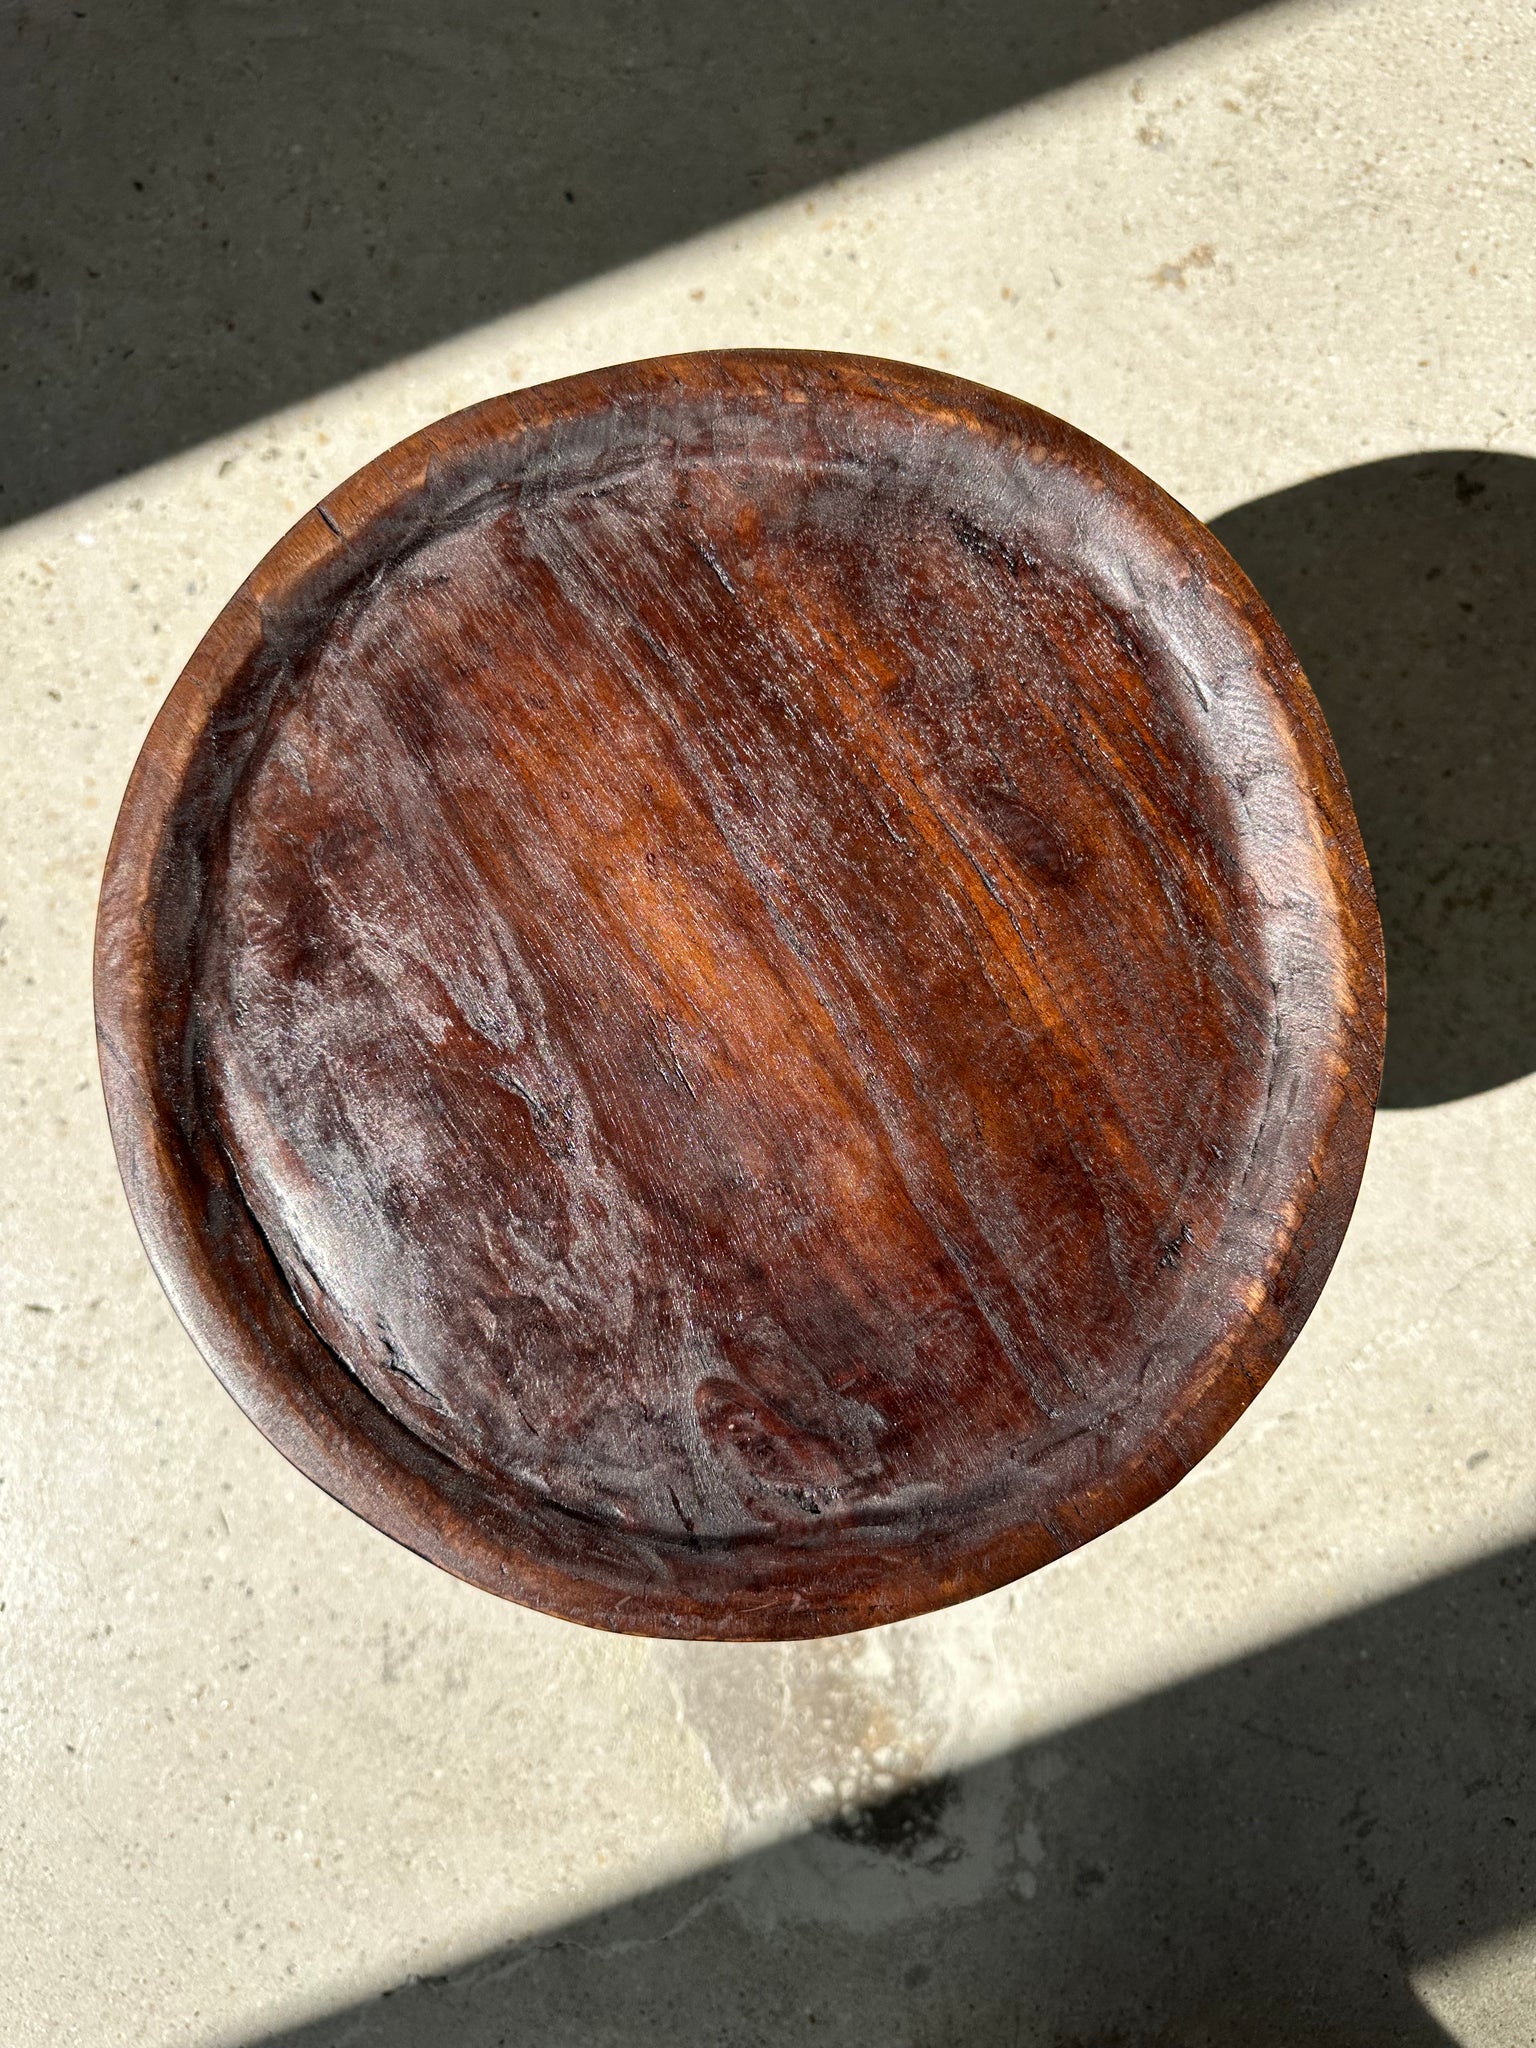 Tabouret tripode en teck upcyclé bas creux - Petit tabouret en bois massif brun assise circulaire creuse H:35cm D:30cm